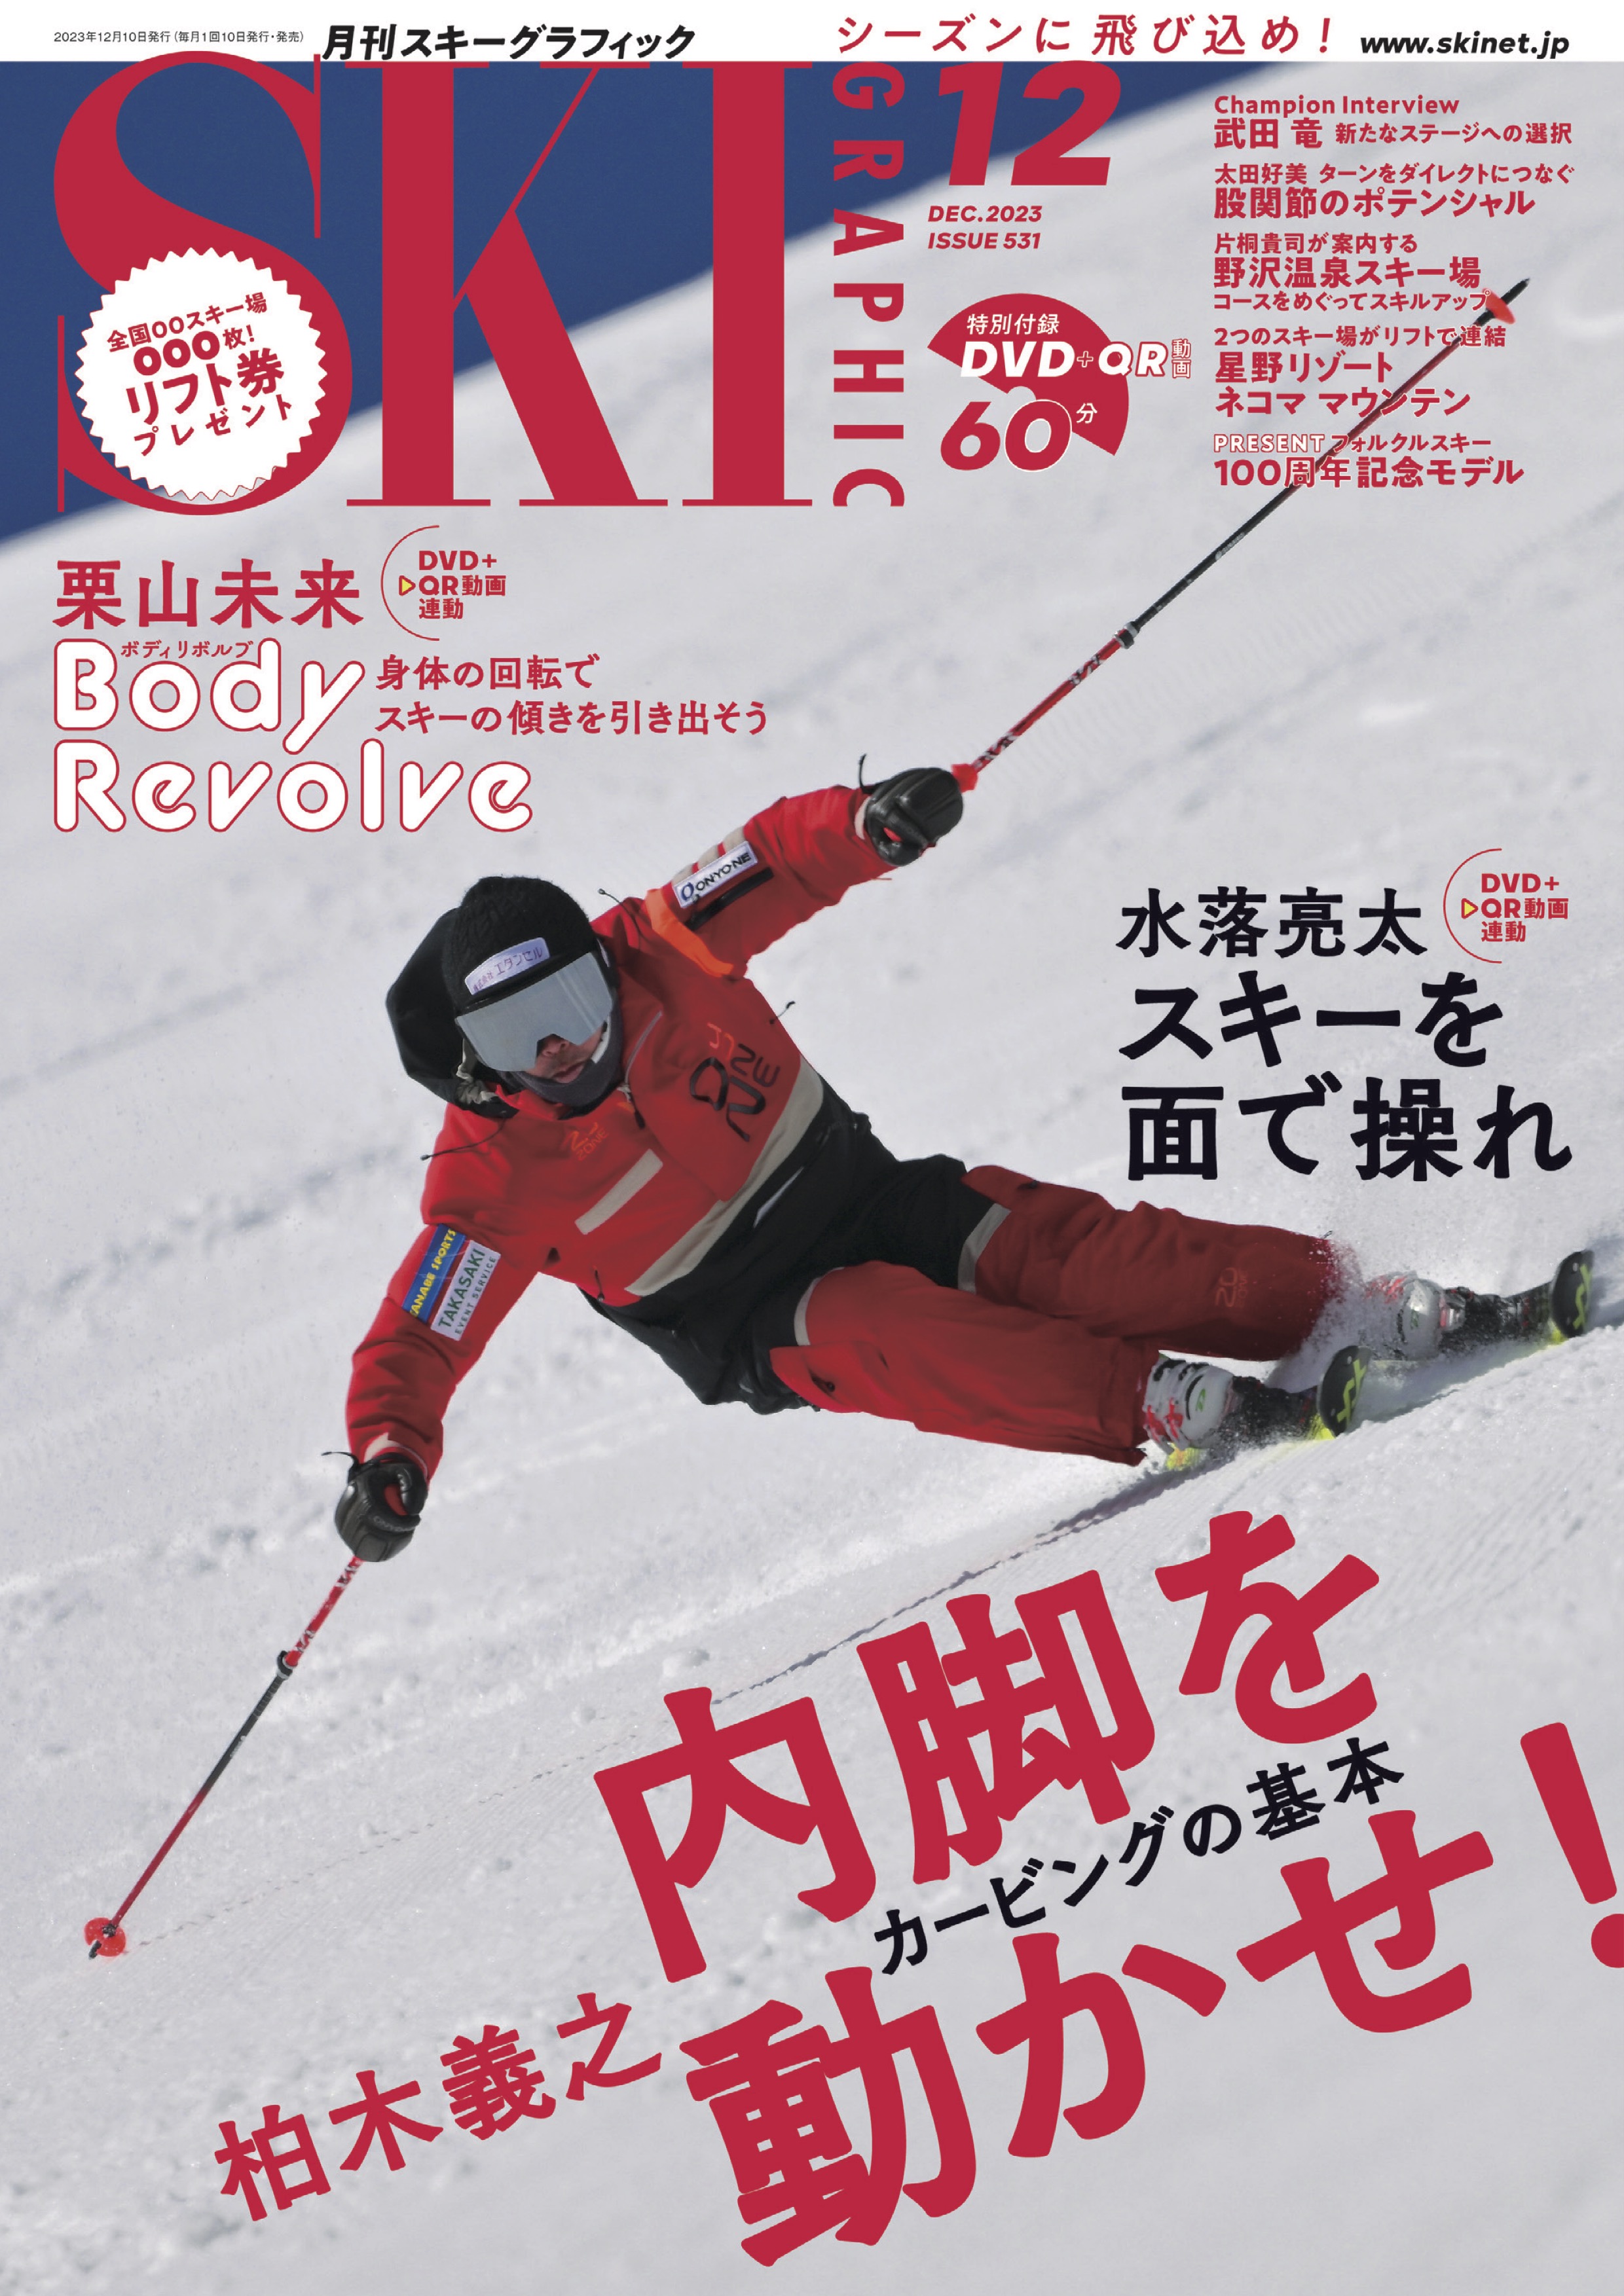 キロロ&札幌国際 共通1日券 1枚 - スキー場